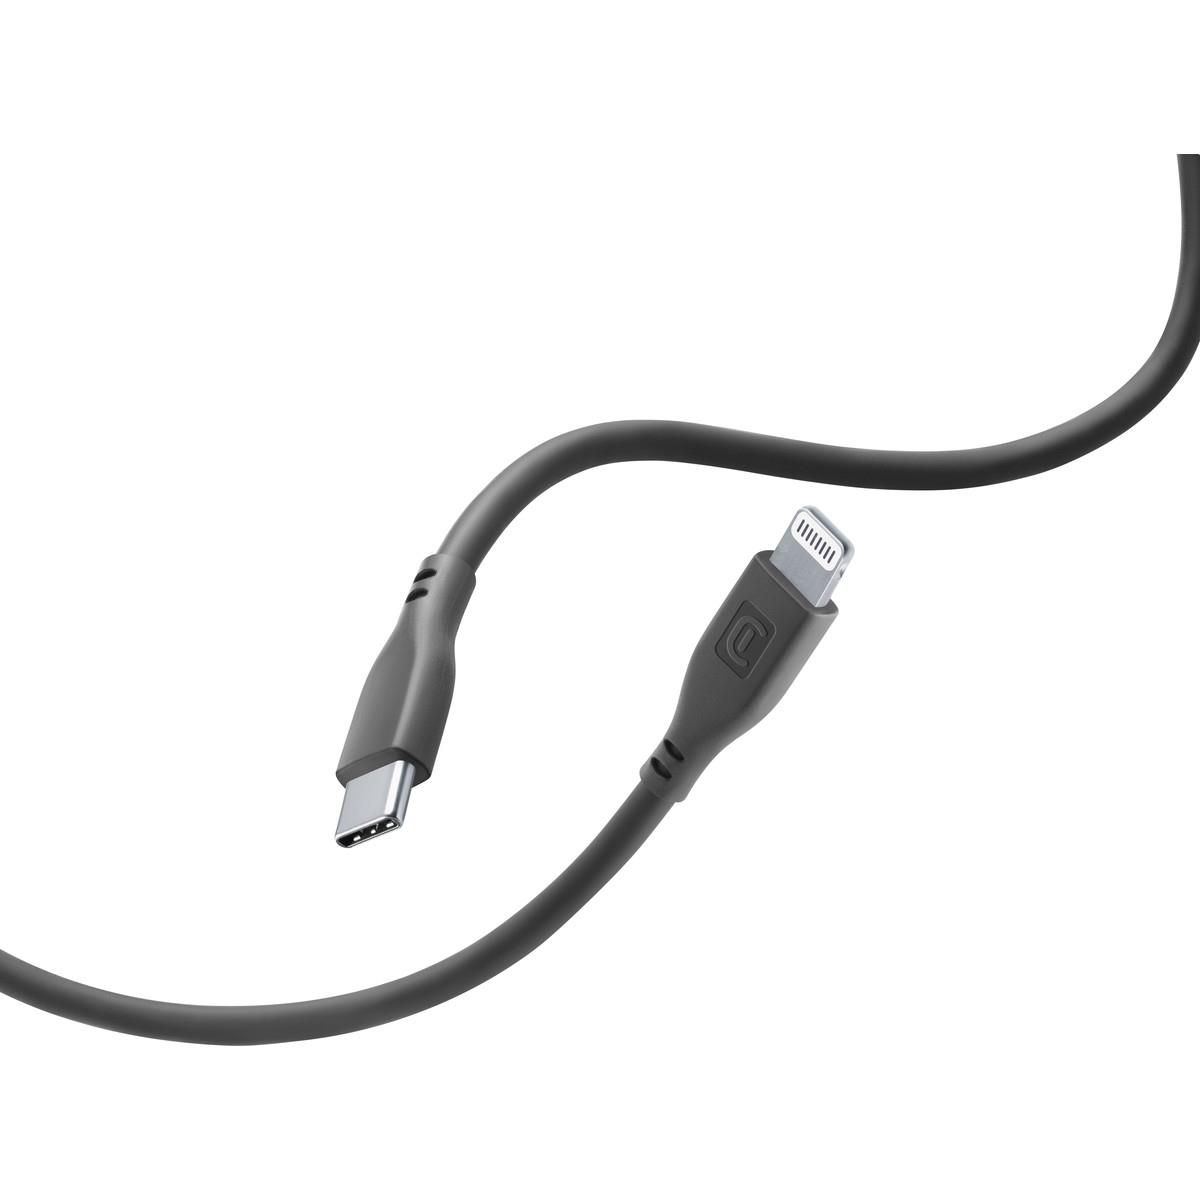 Lade- und Datenkabel SOFT 120cm USB Type-C auf Apple Lightning